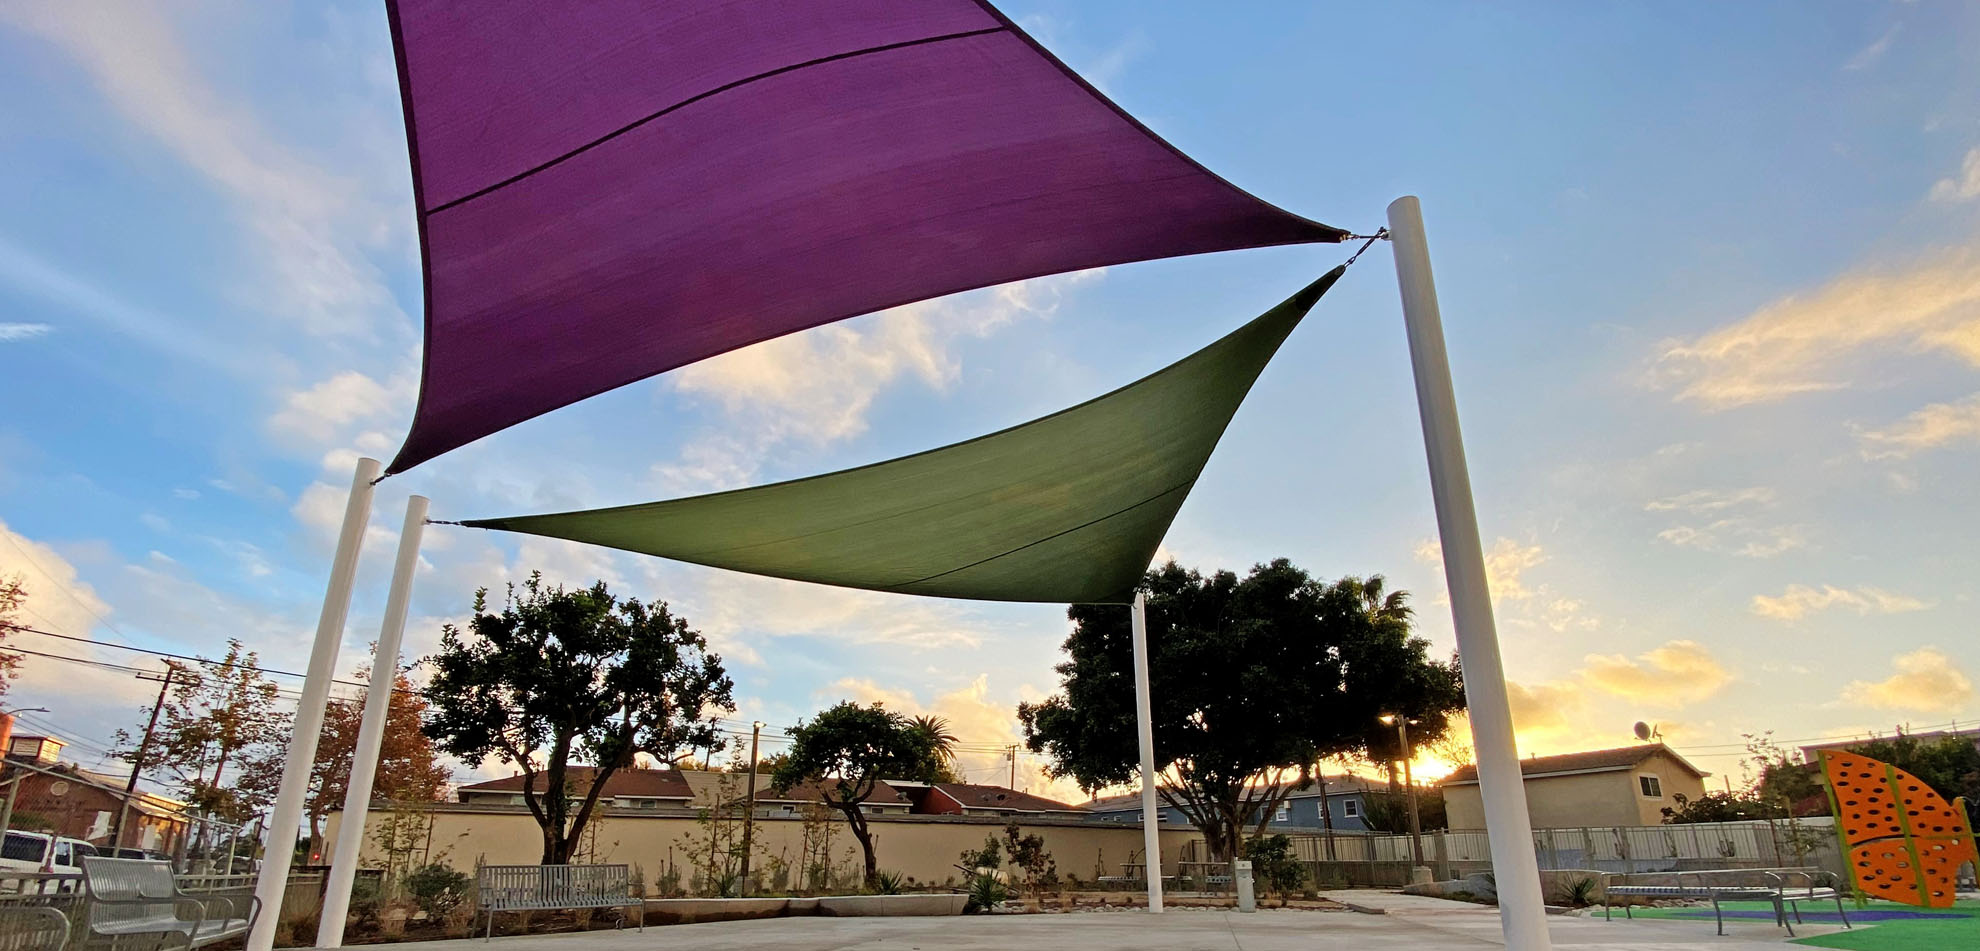 shade structure at Mariposa park